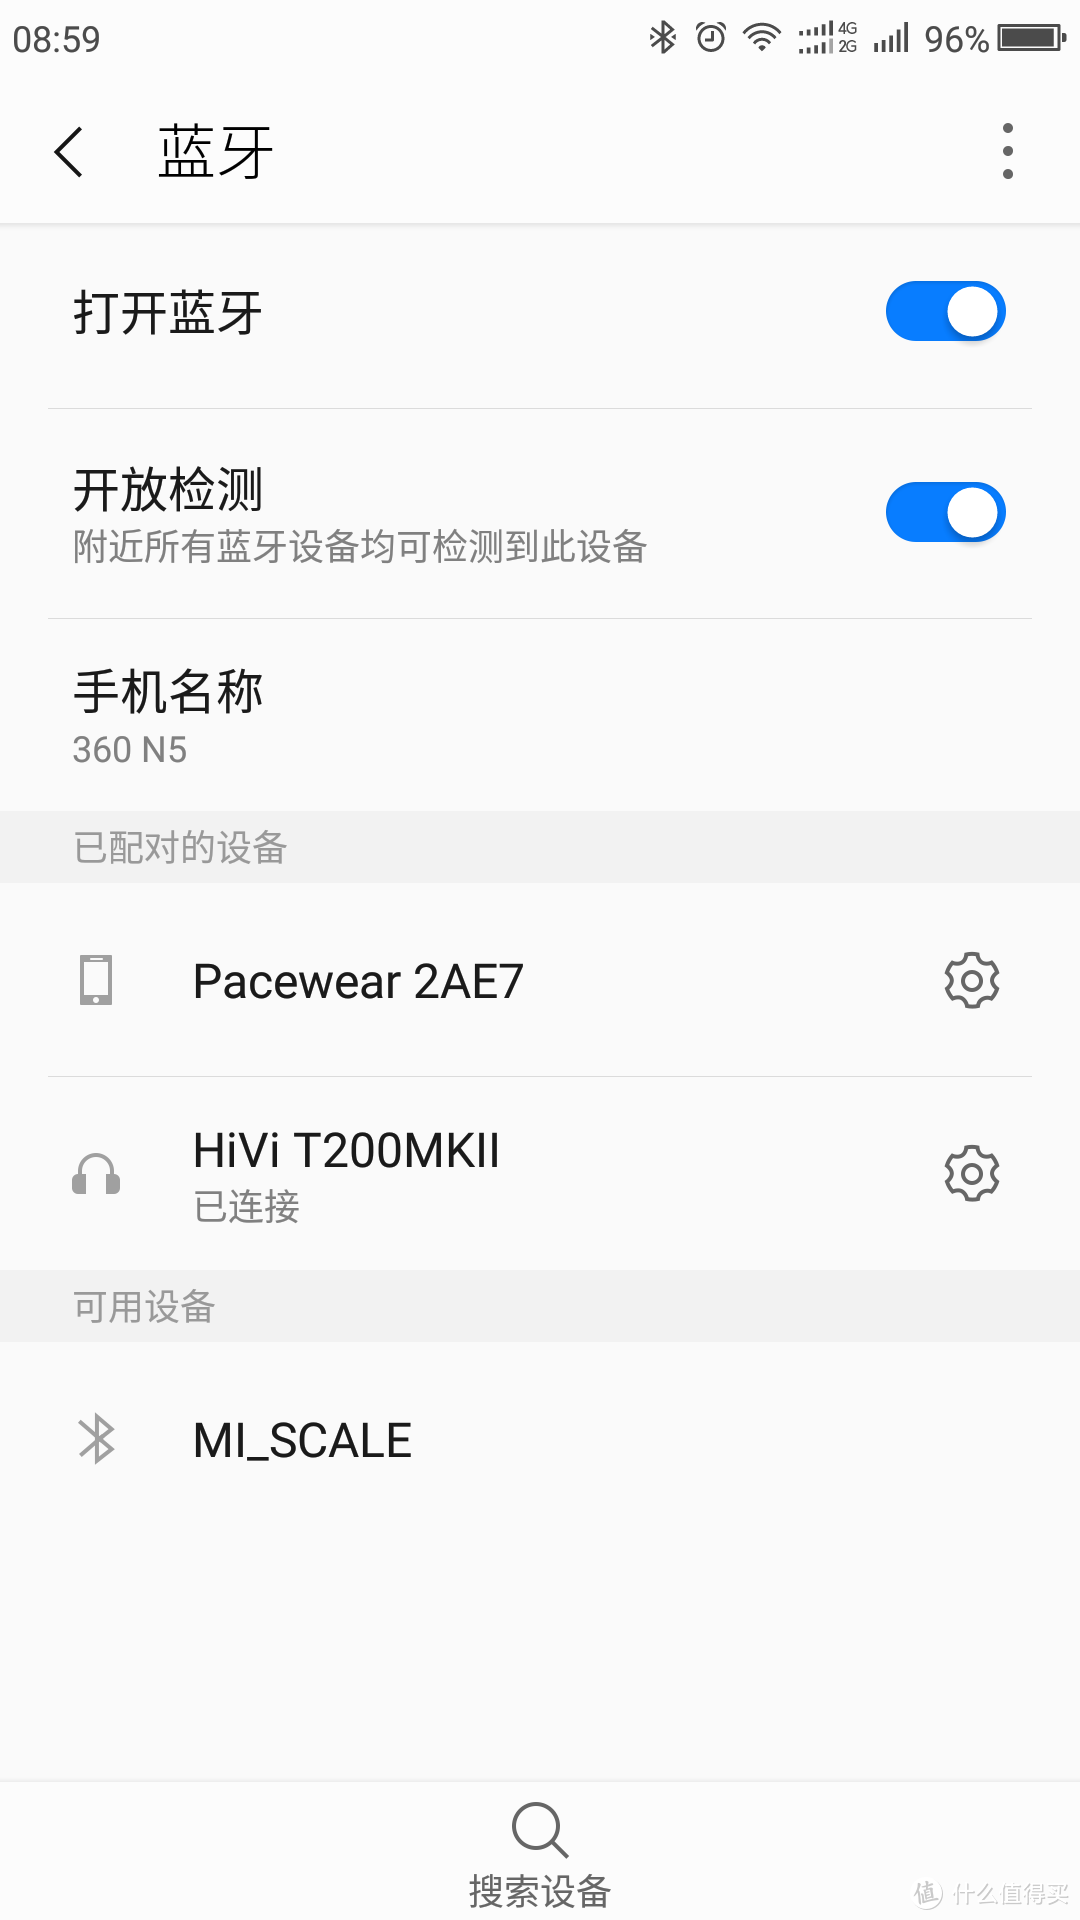 我的客厅数字影音新声级，HiVi惠威T200MKII HIFI无线有源音箱使用报告